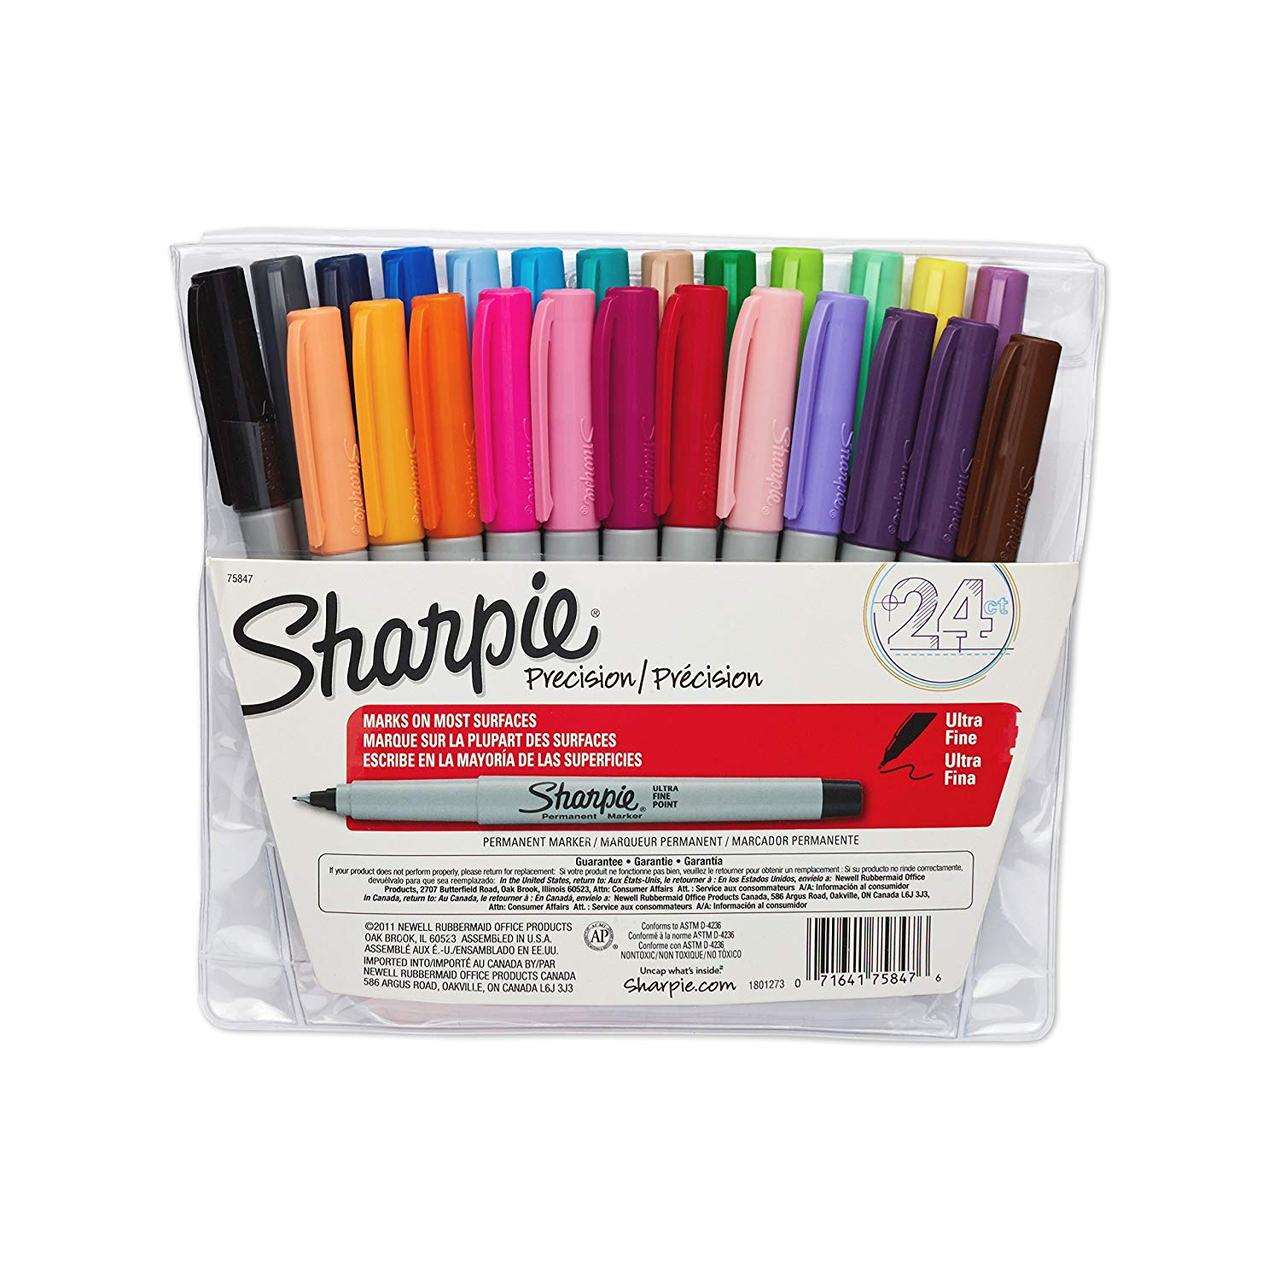 Sharpie Ultra Fine (24 цветов) - тонкие перманентные маркеры из США:  продажа, цена в Киеве. Маркеры, фломастеры от "VTC6 Sale" - 880928464